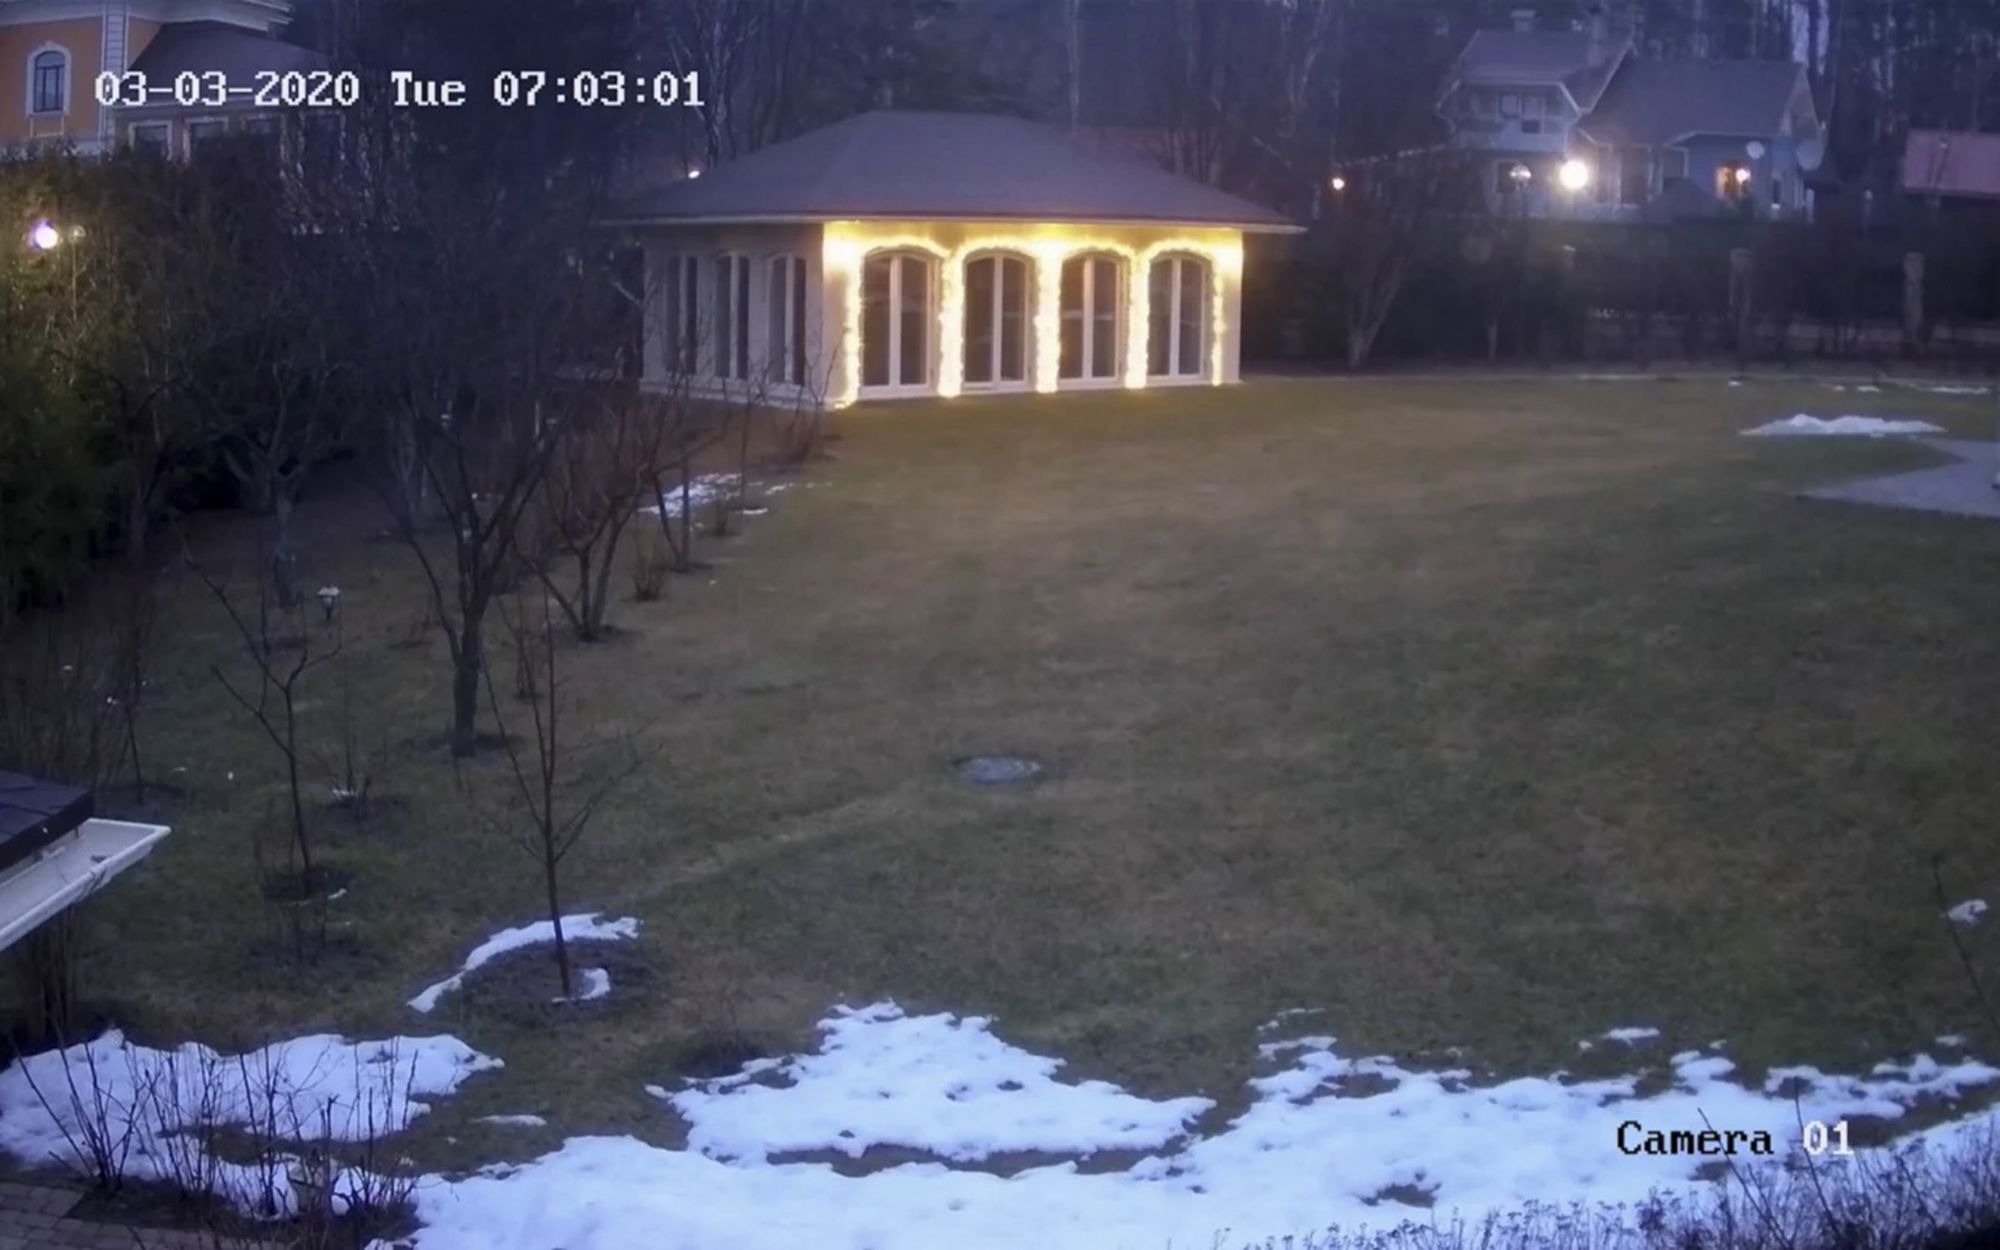 Кадр с записи камеры видеонаблюдения, зеленая лужайка в снегу и дом с подсвеченными окнами